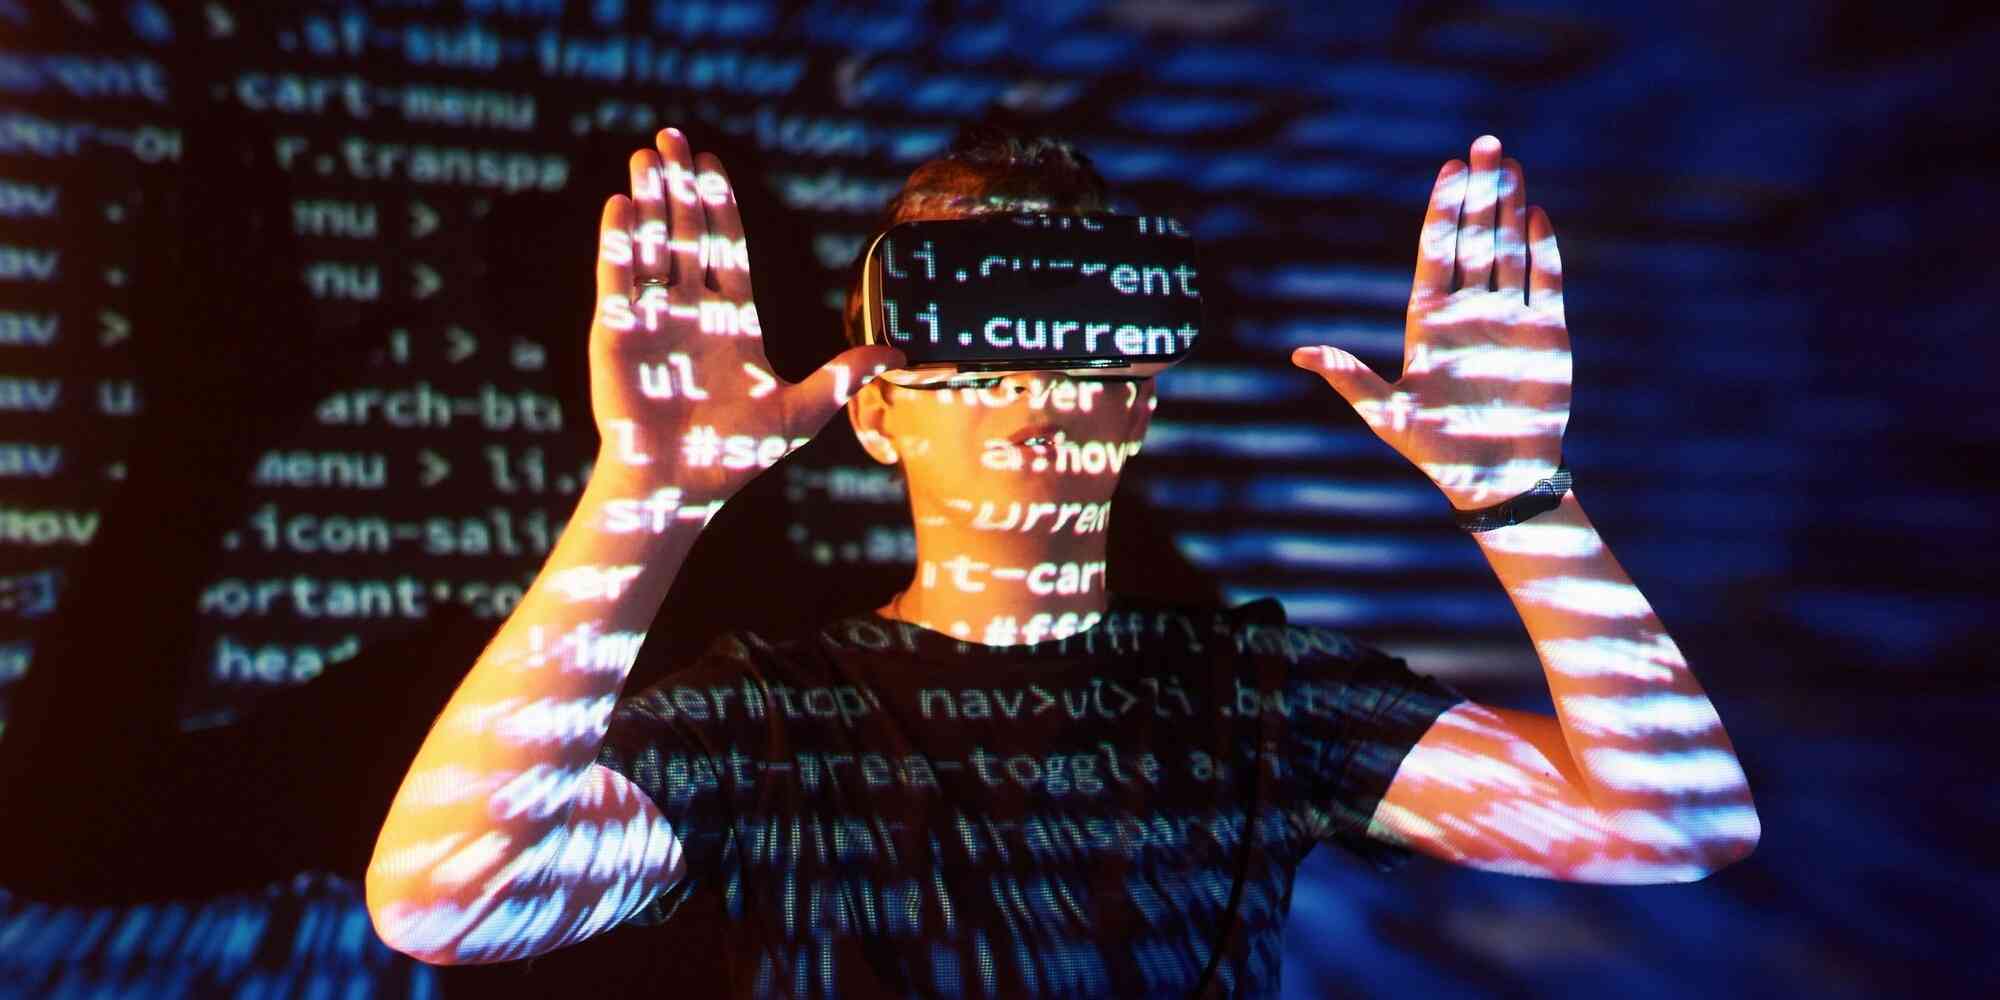 一个戴着虚拟现实眼镜的人他的脸被投影在屏幕上。